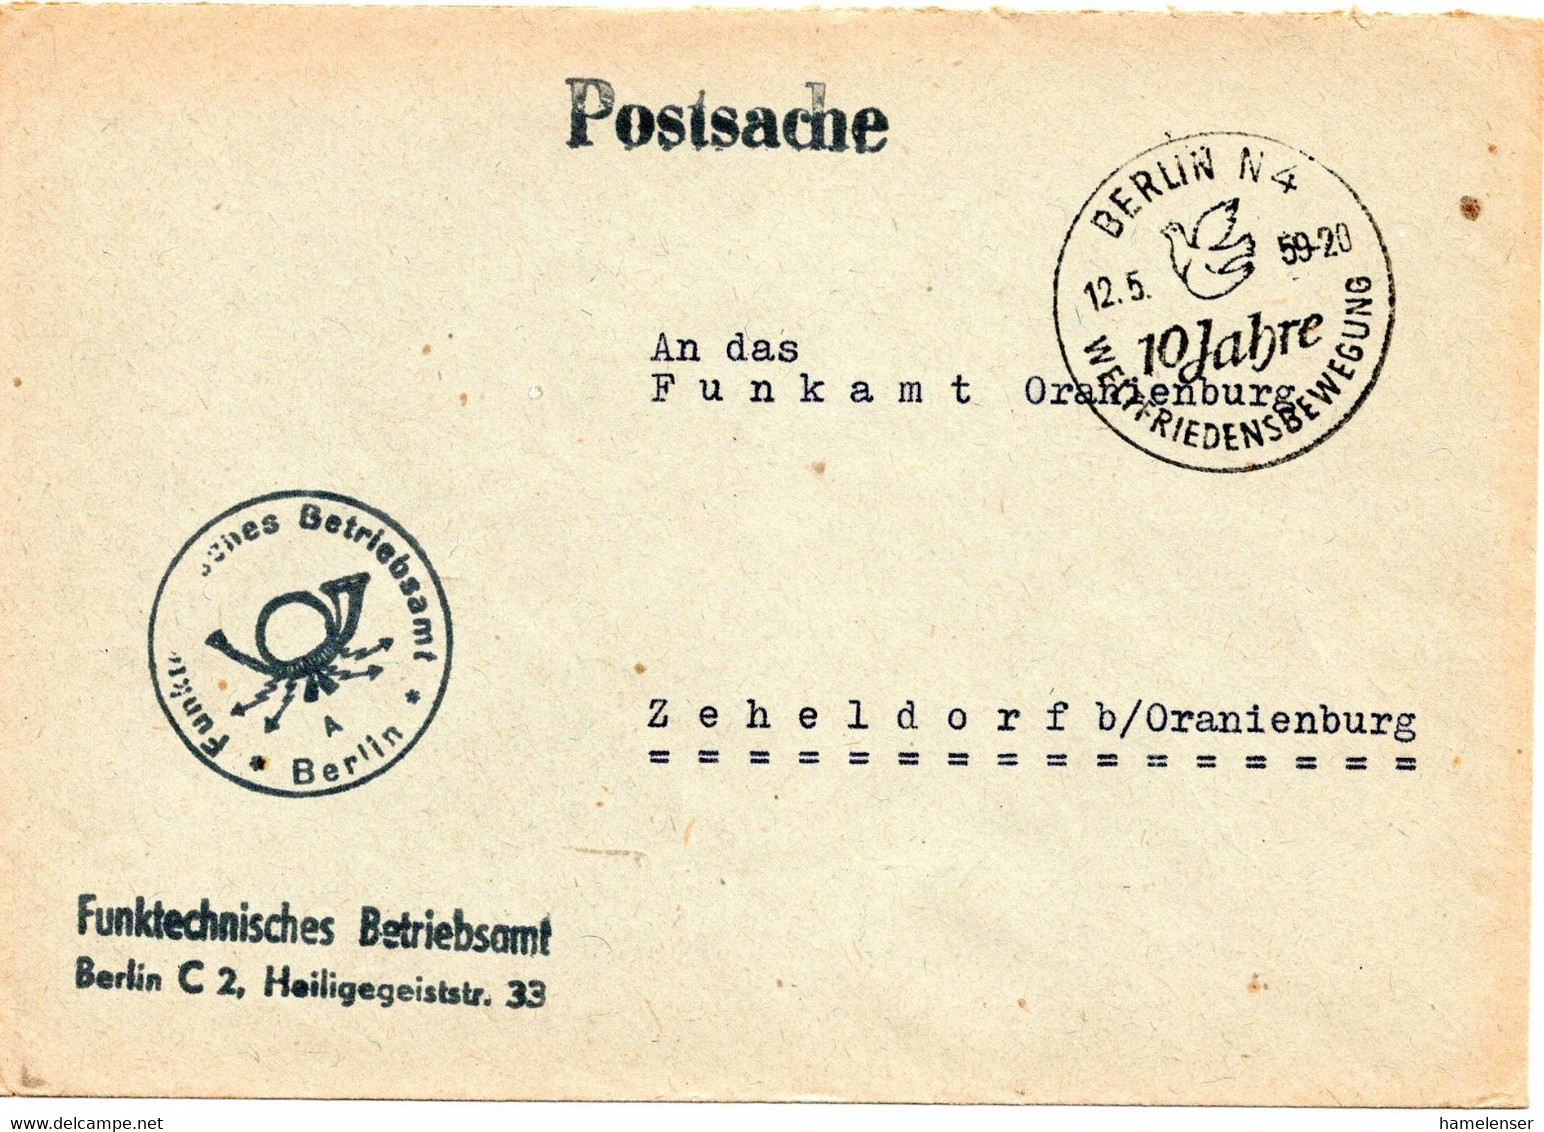 62755 - DDR - 1959 - "Postsache"-Bf BERLIN - 10 JAHRE WELTFRIEDENSBEWEGUNG -> Zeheldorf - Covers & Documents